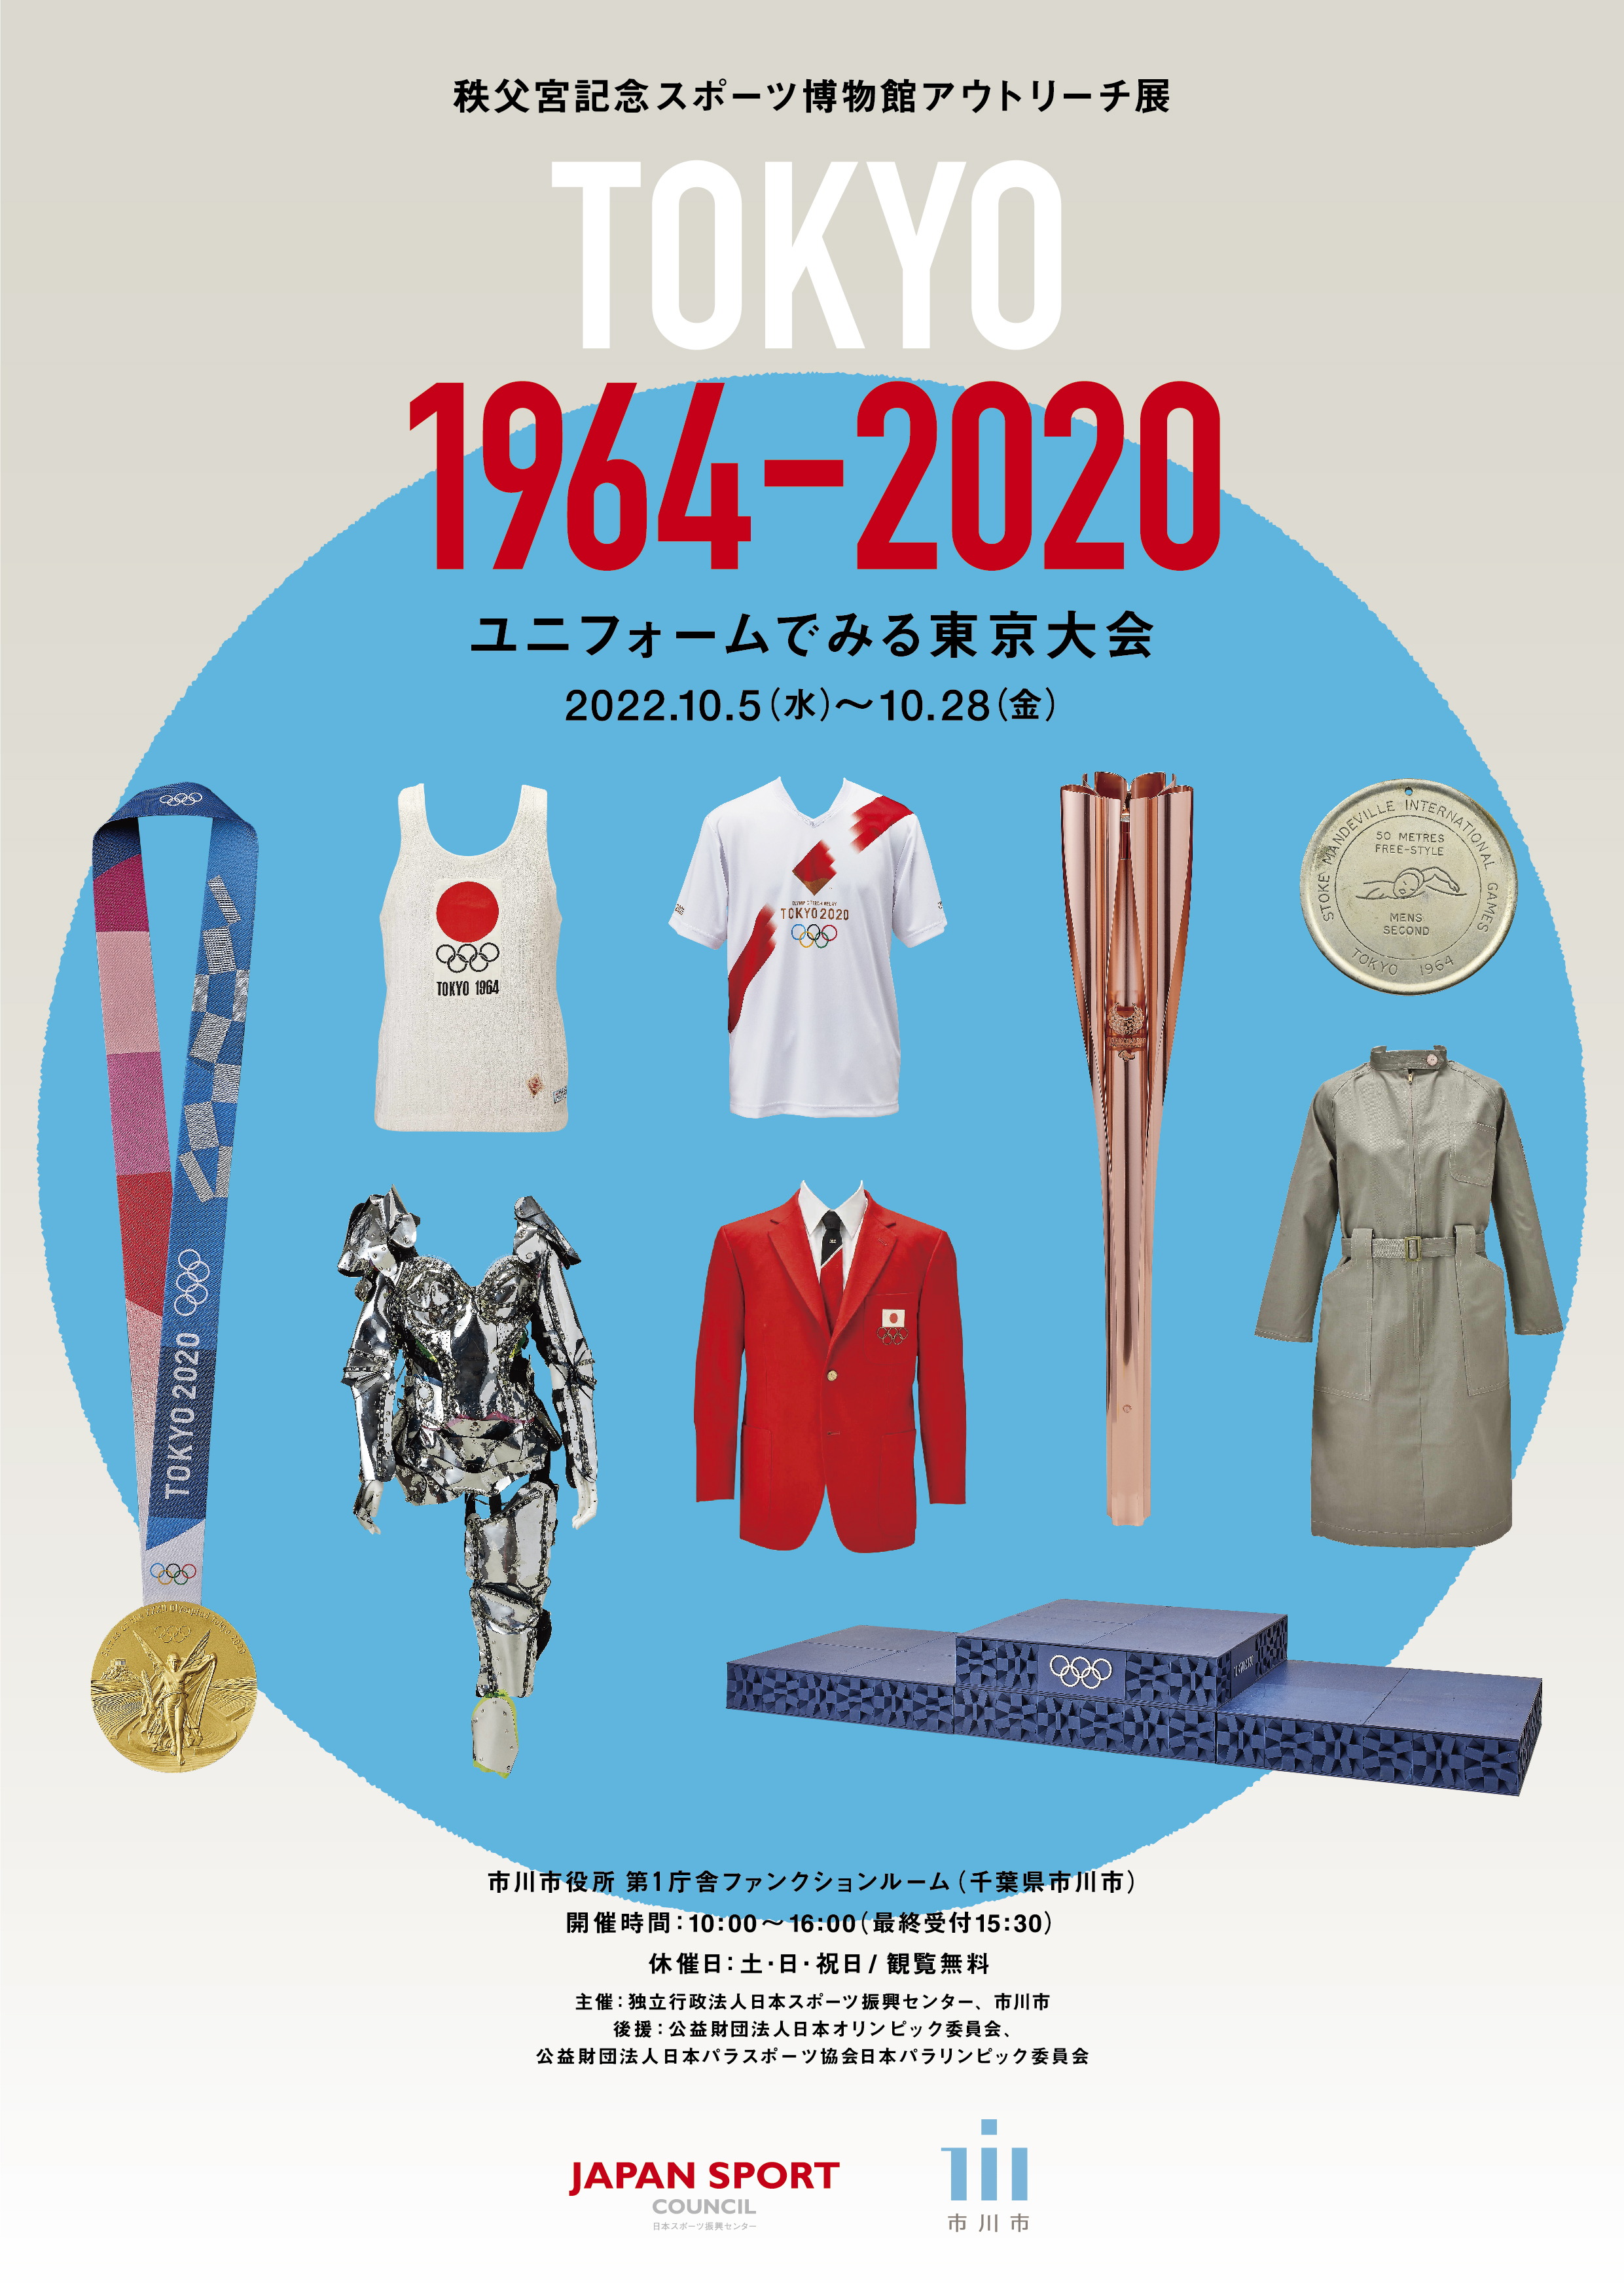 アウトリーチ展「TOKYO 1964－2020 ユニフォームでみる東京大会」のチラシ表面